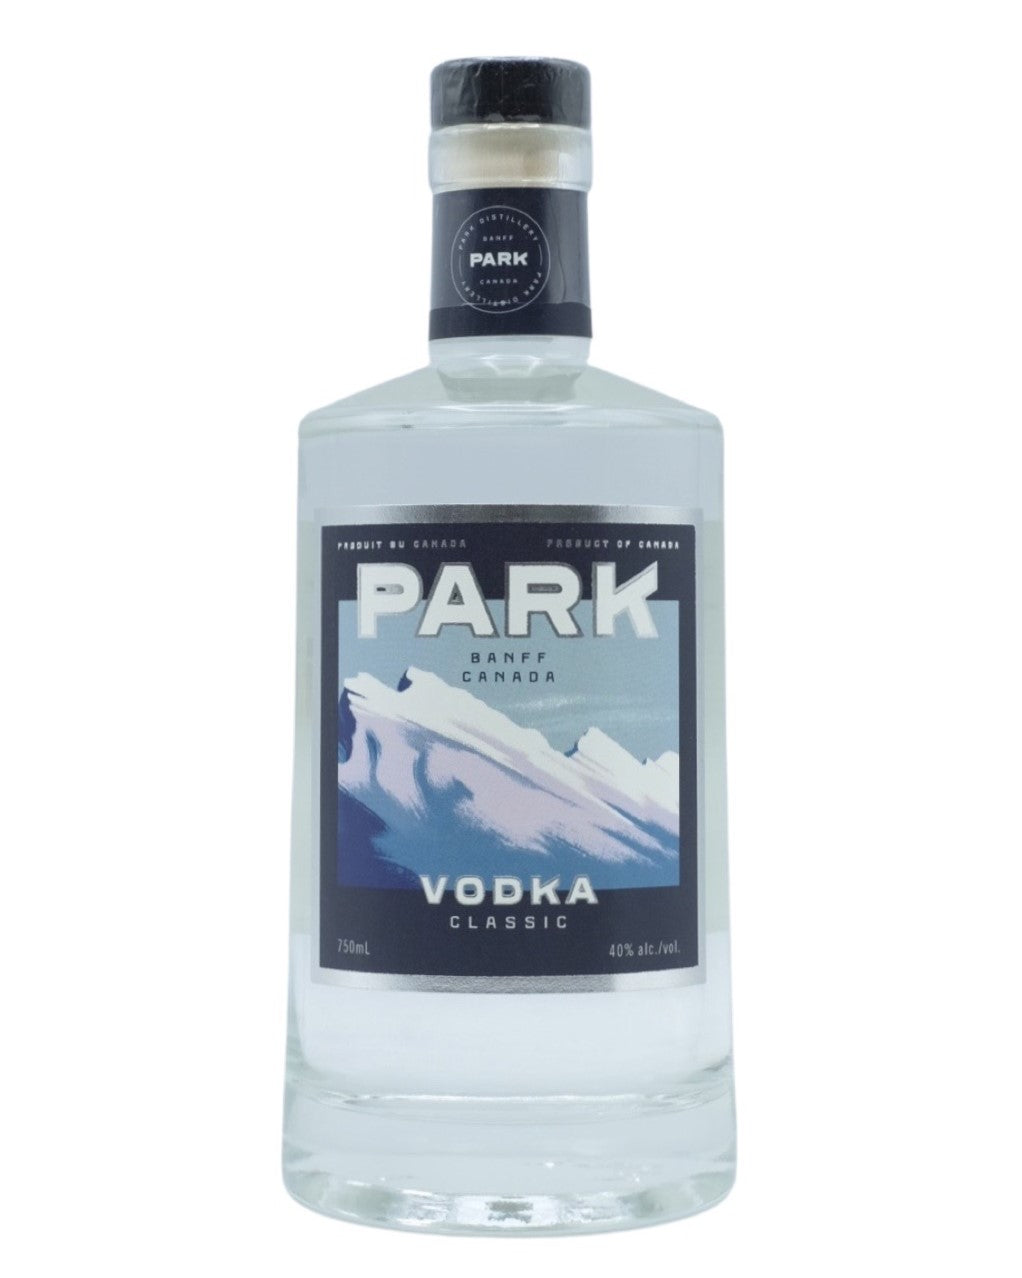 Park Distillery Vodka